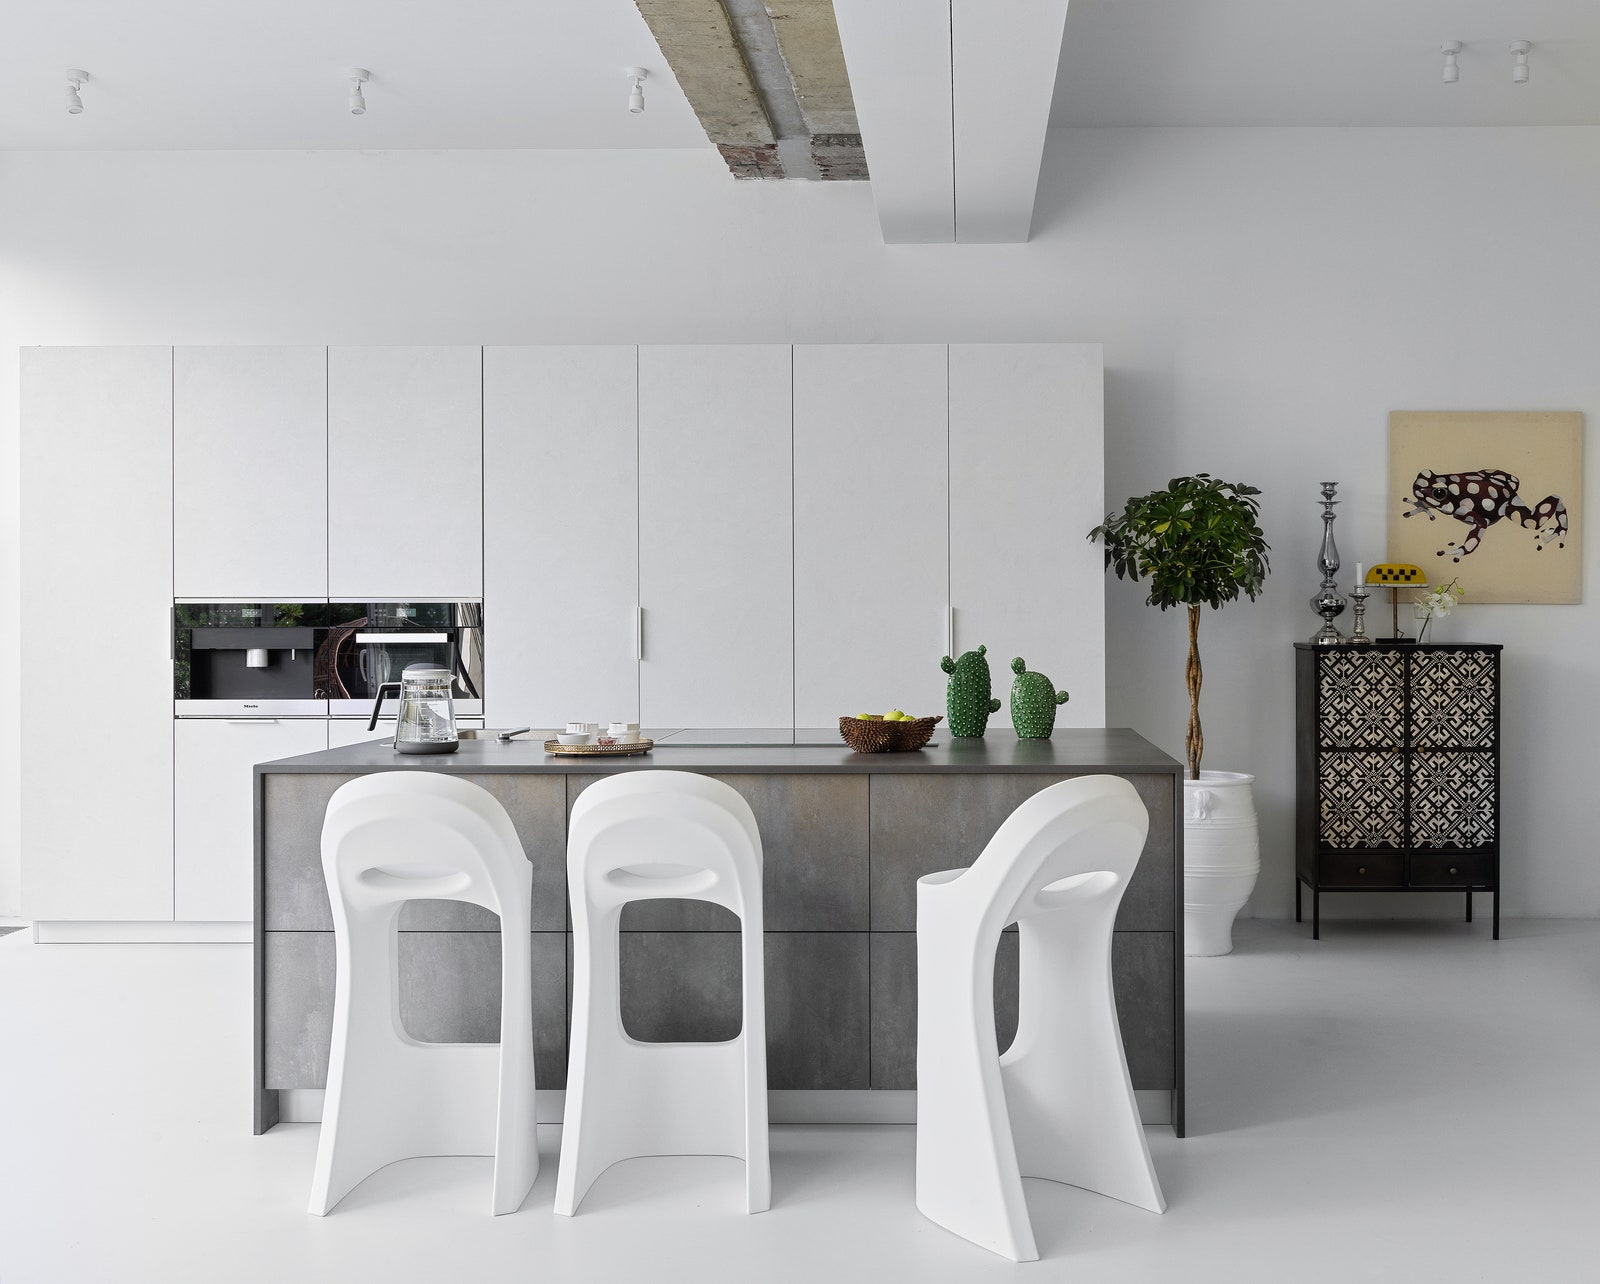 Кухня в доме по проекту Анны Эрман. Гарнитур сделан на заказ барные стулья Slide. Фото Сергей Красюк.